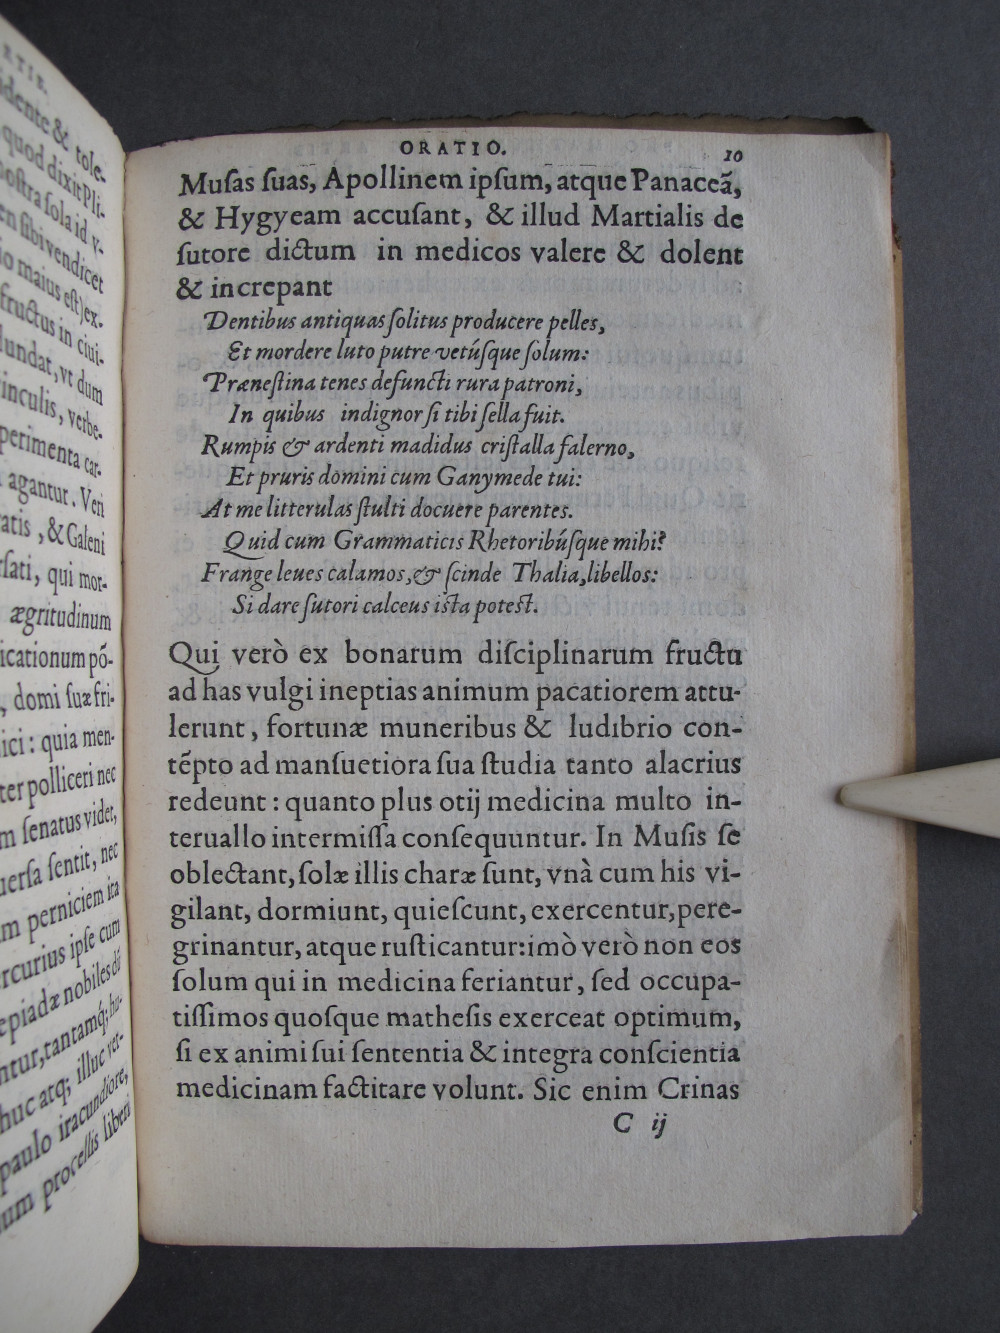 Folio 10 recto